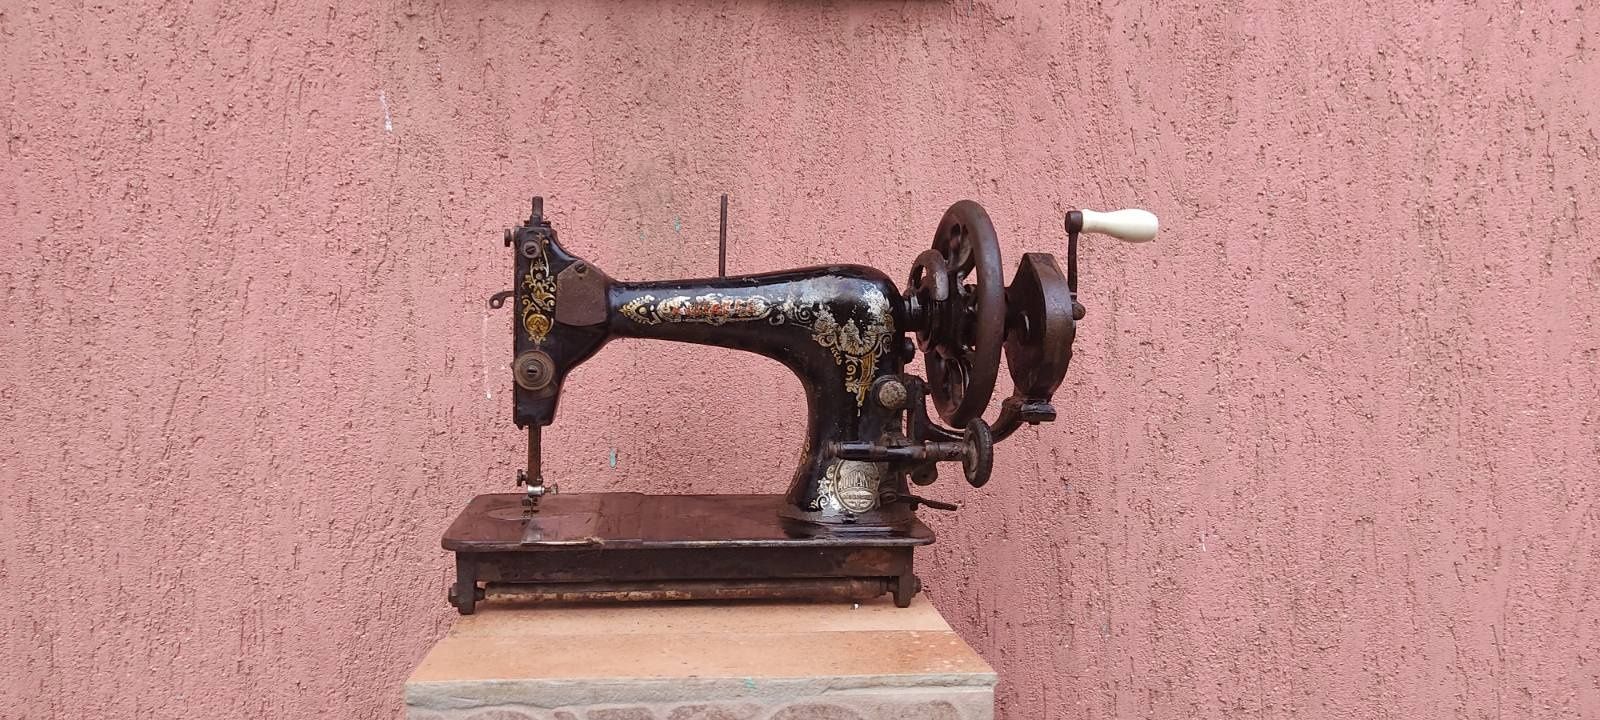 Антиквариатная немецкая швейная машинка